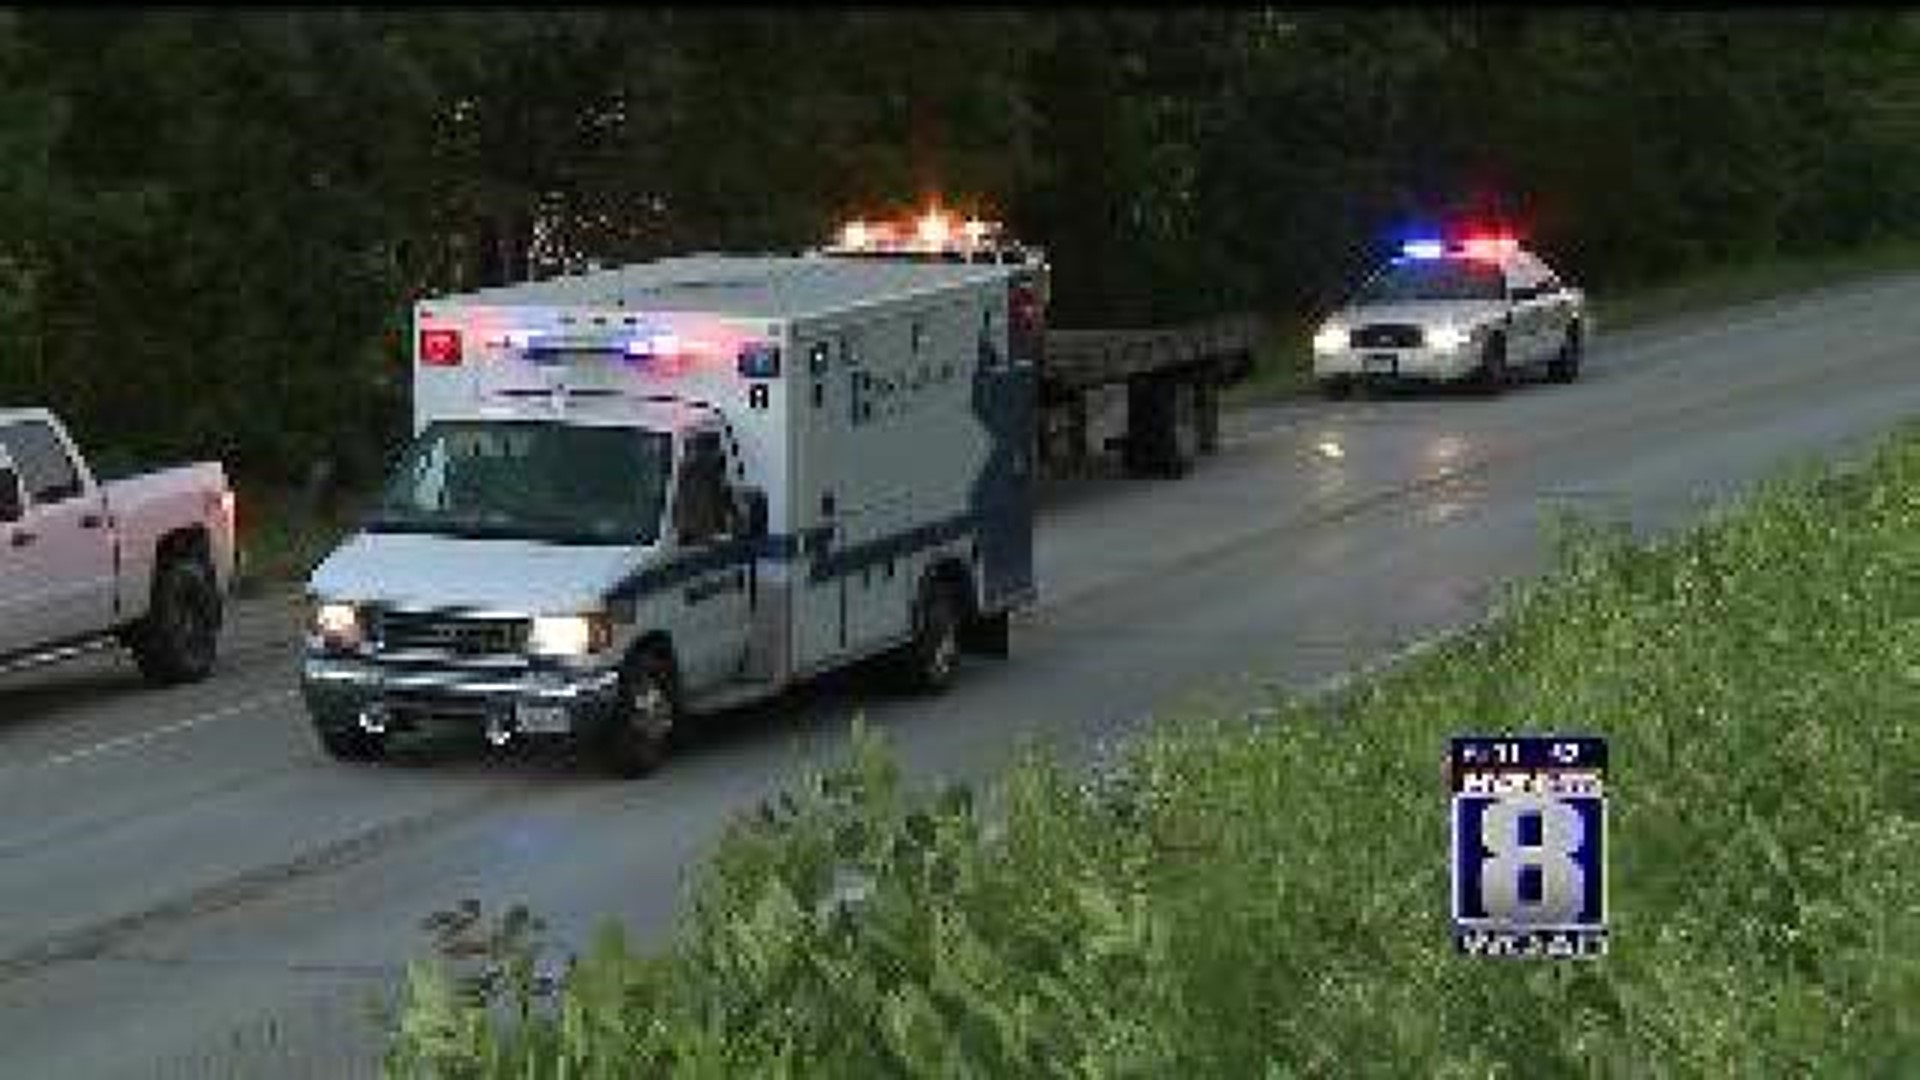 Illinois City man killed in crash